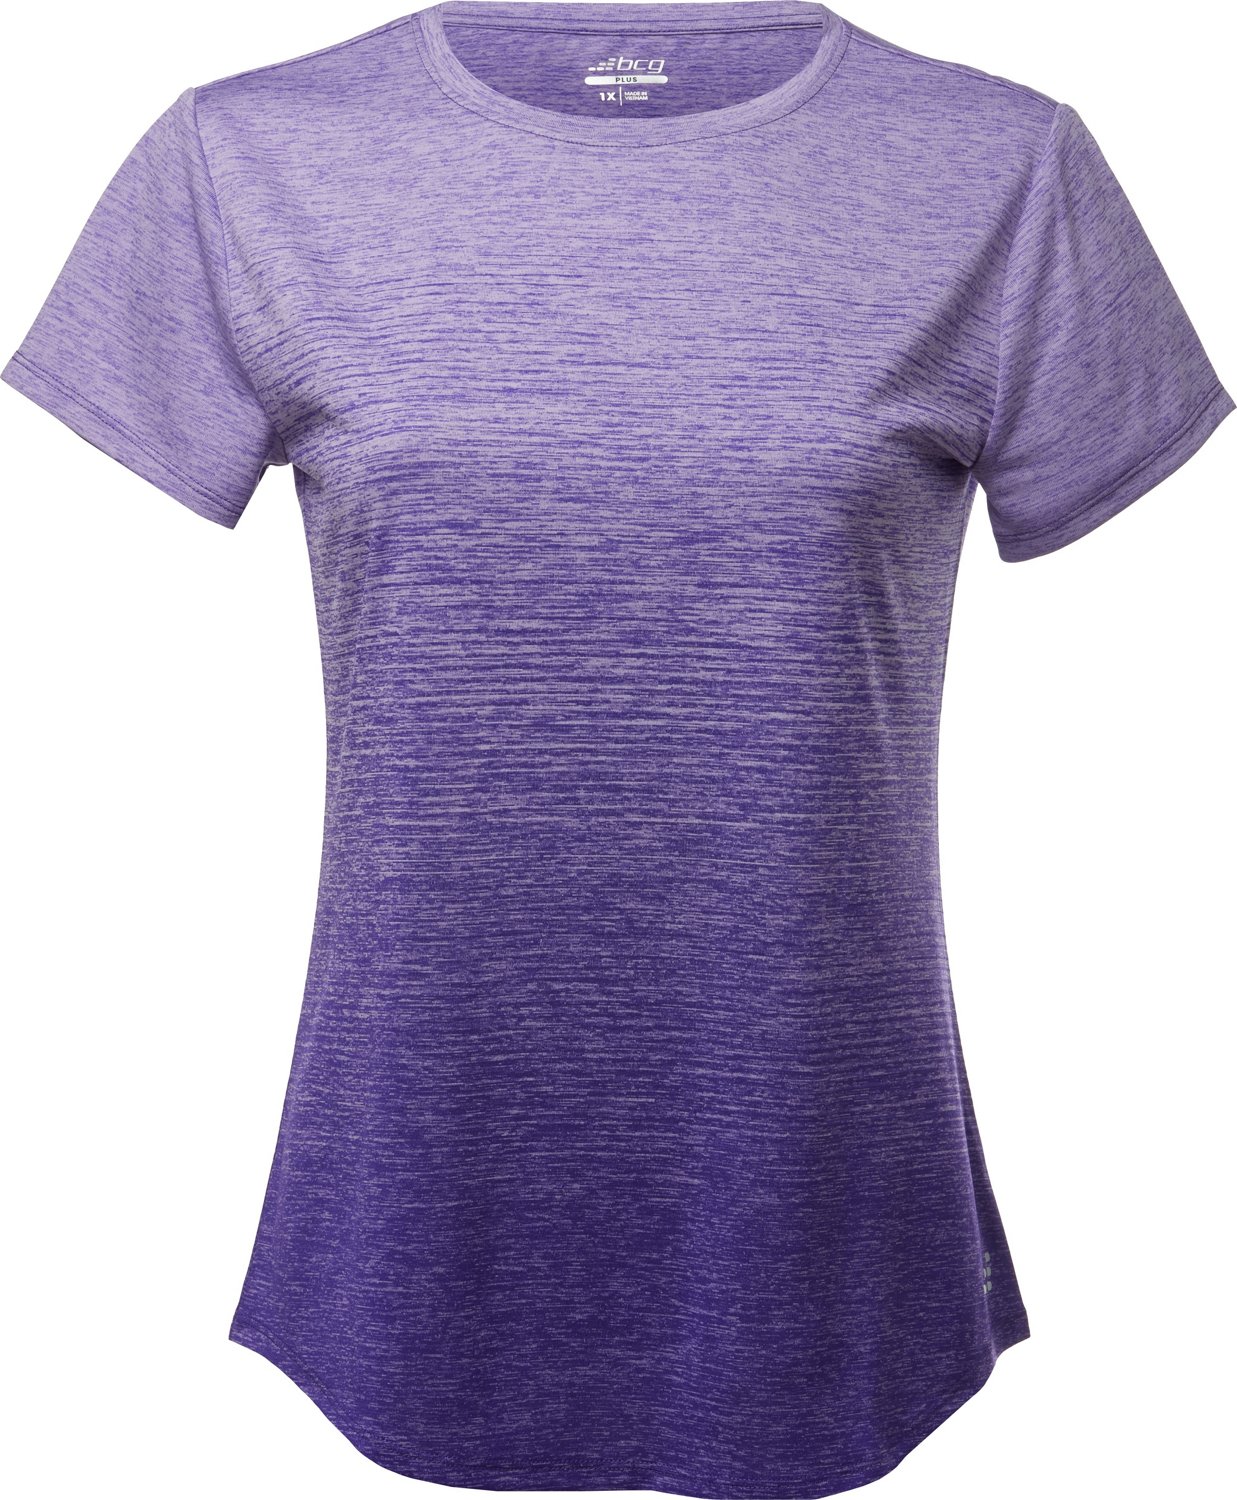 BCG Women's Ombre Short Sleeve T-shirt